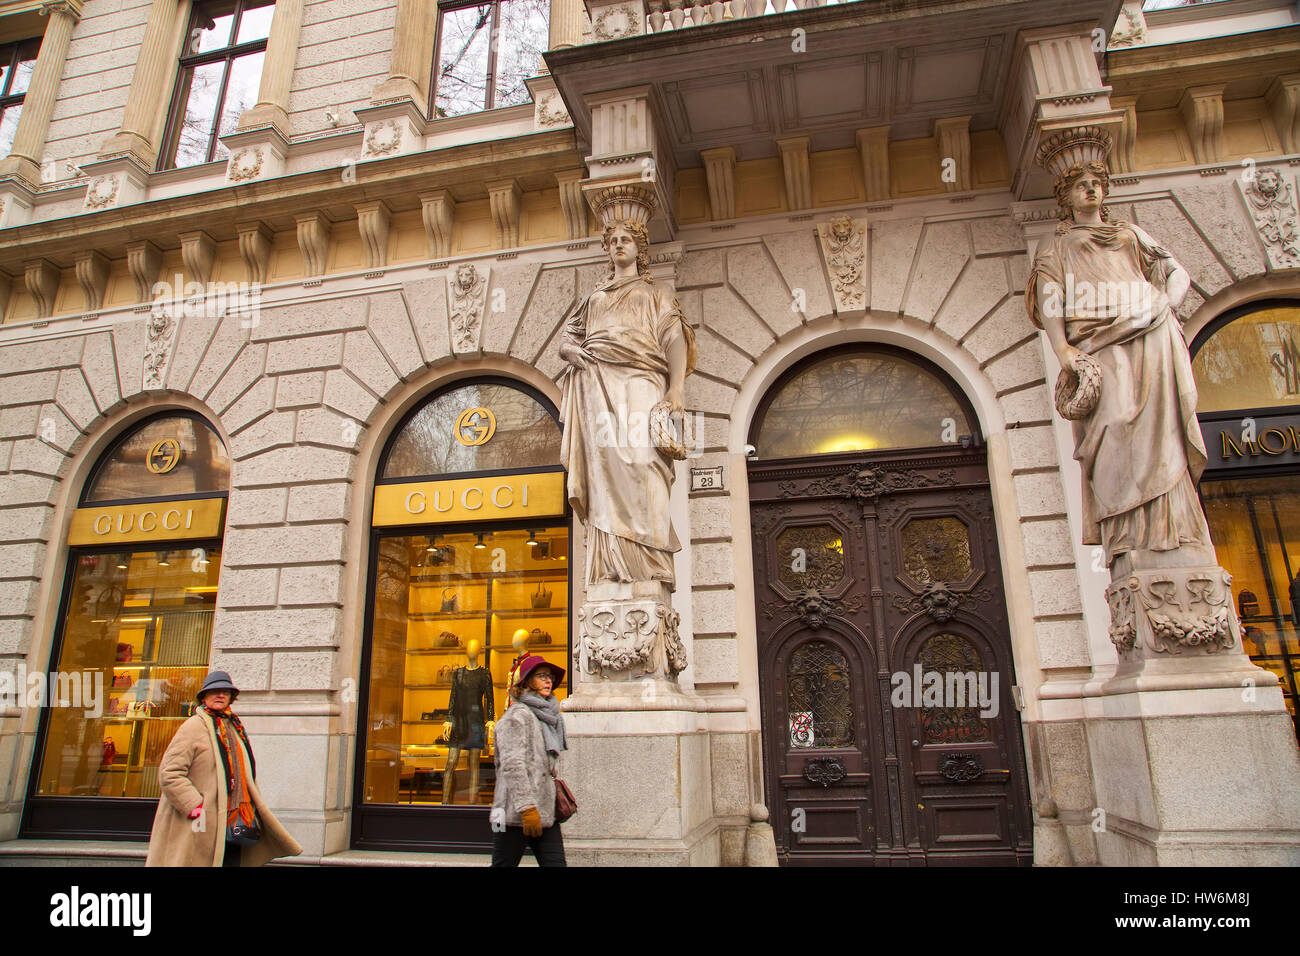 Gucci Luxus-Bekleidungsgeschäft. Andrassy út. Budapest Ungarn, Südost-Europa Stockfoto